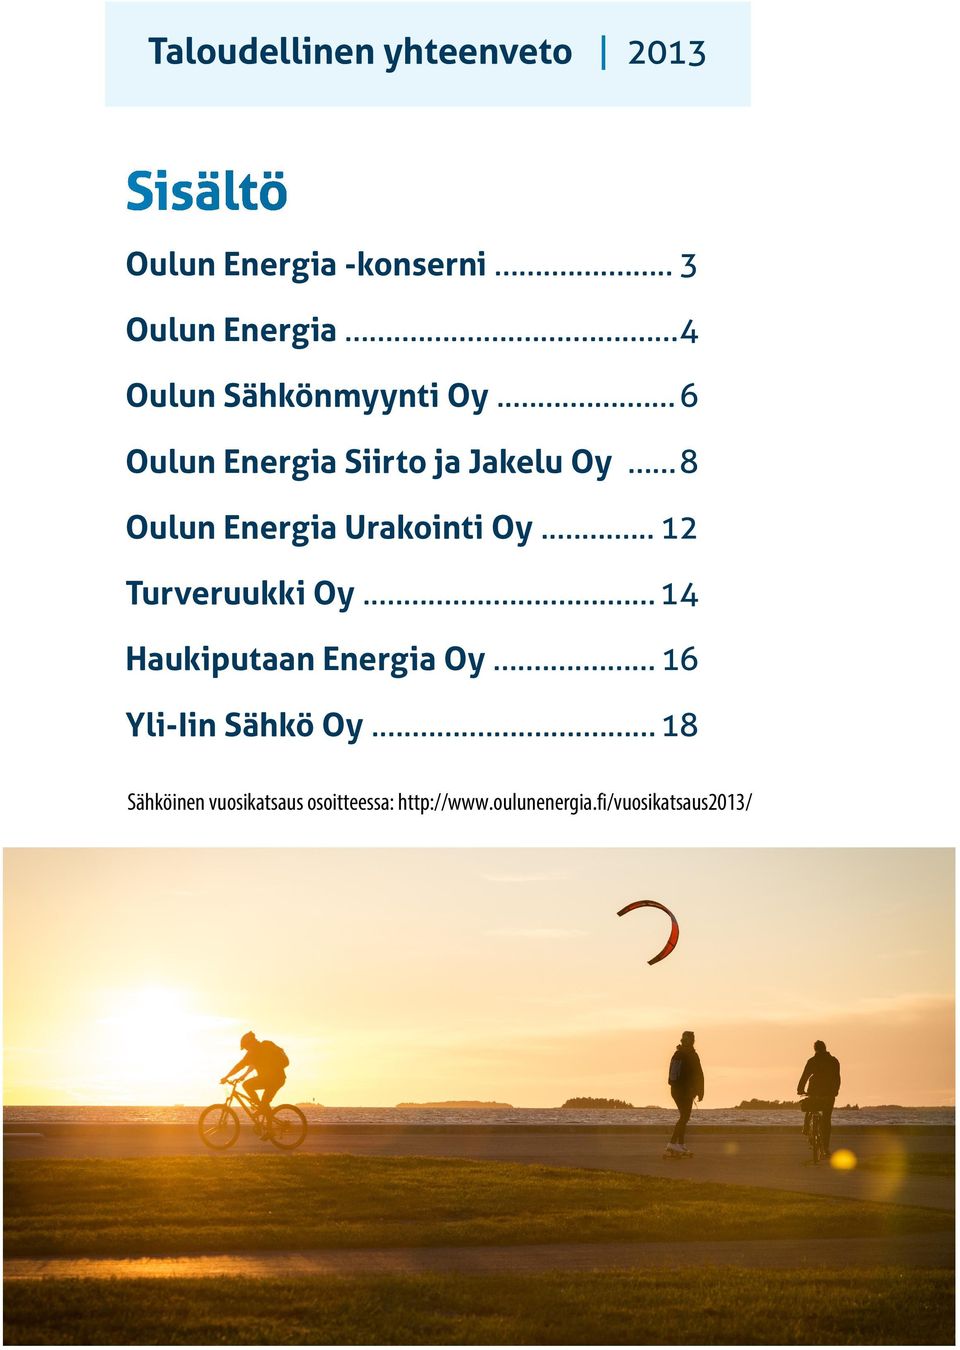 .. 8 Oulun Energia Urakointi Oy... 12 Turveruukki Oy... 14 Haukiputaan Energia Oy.